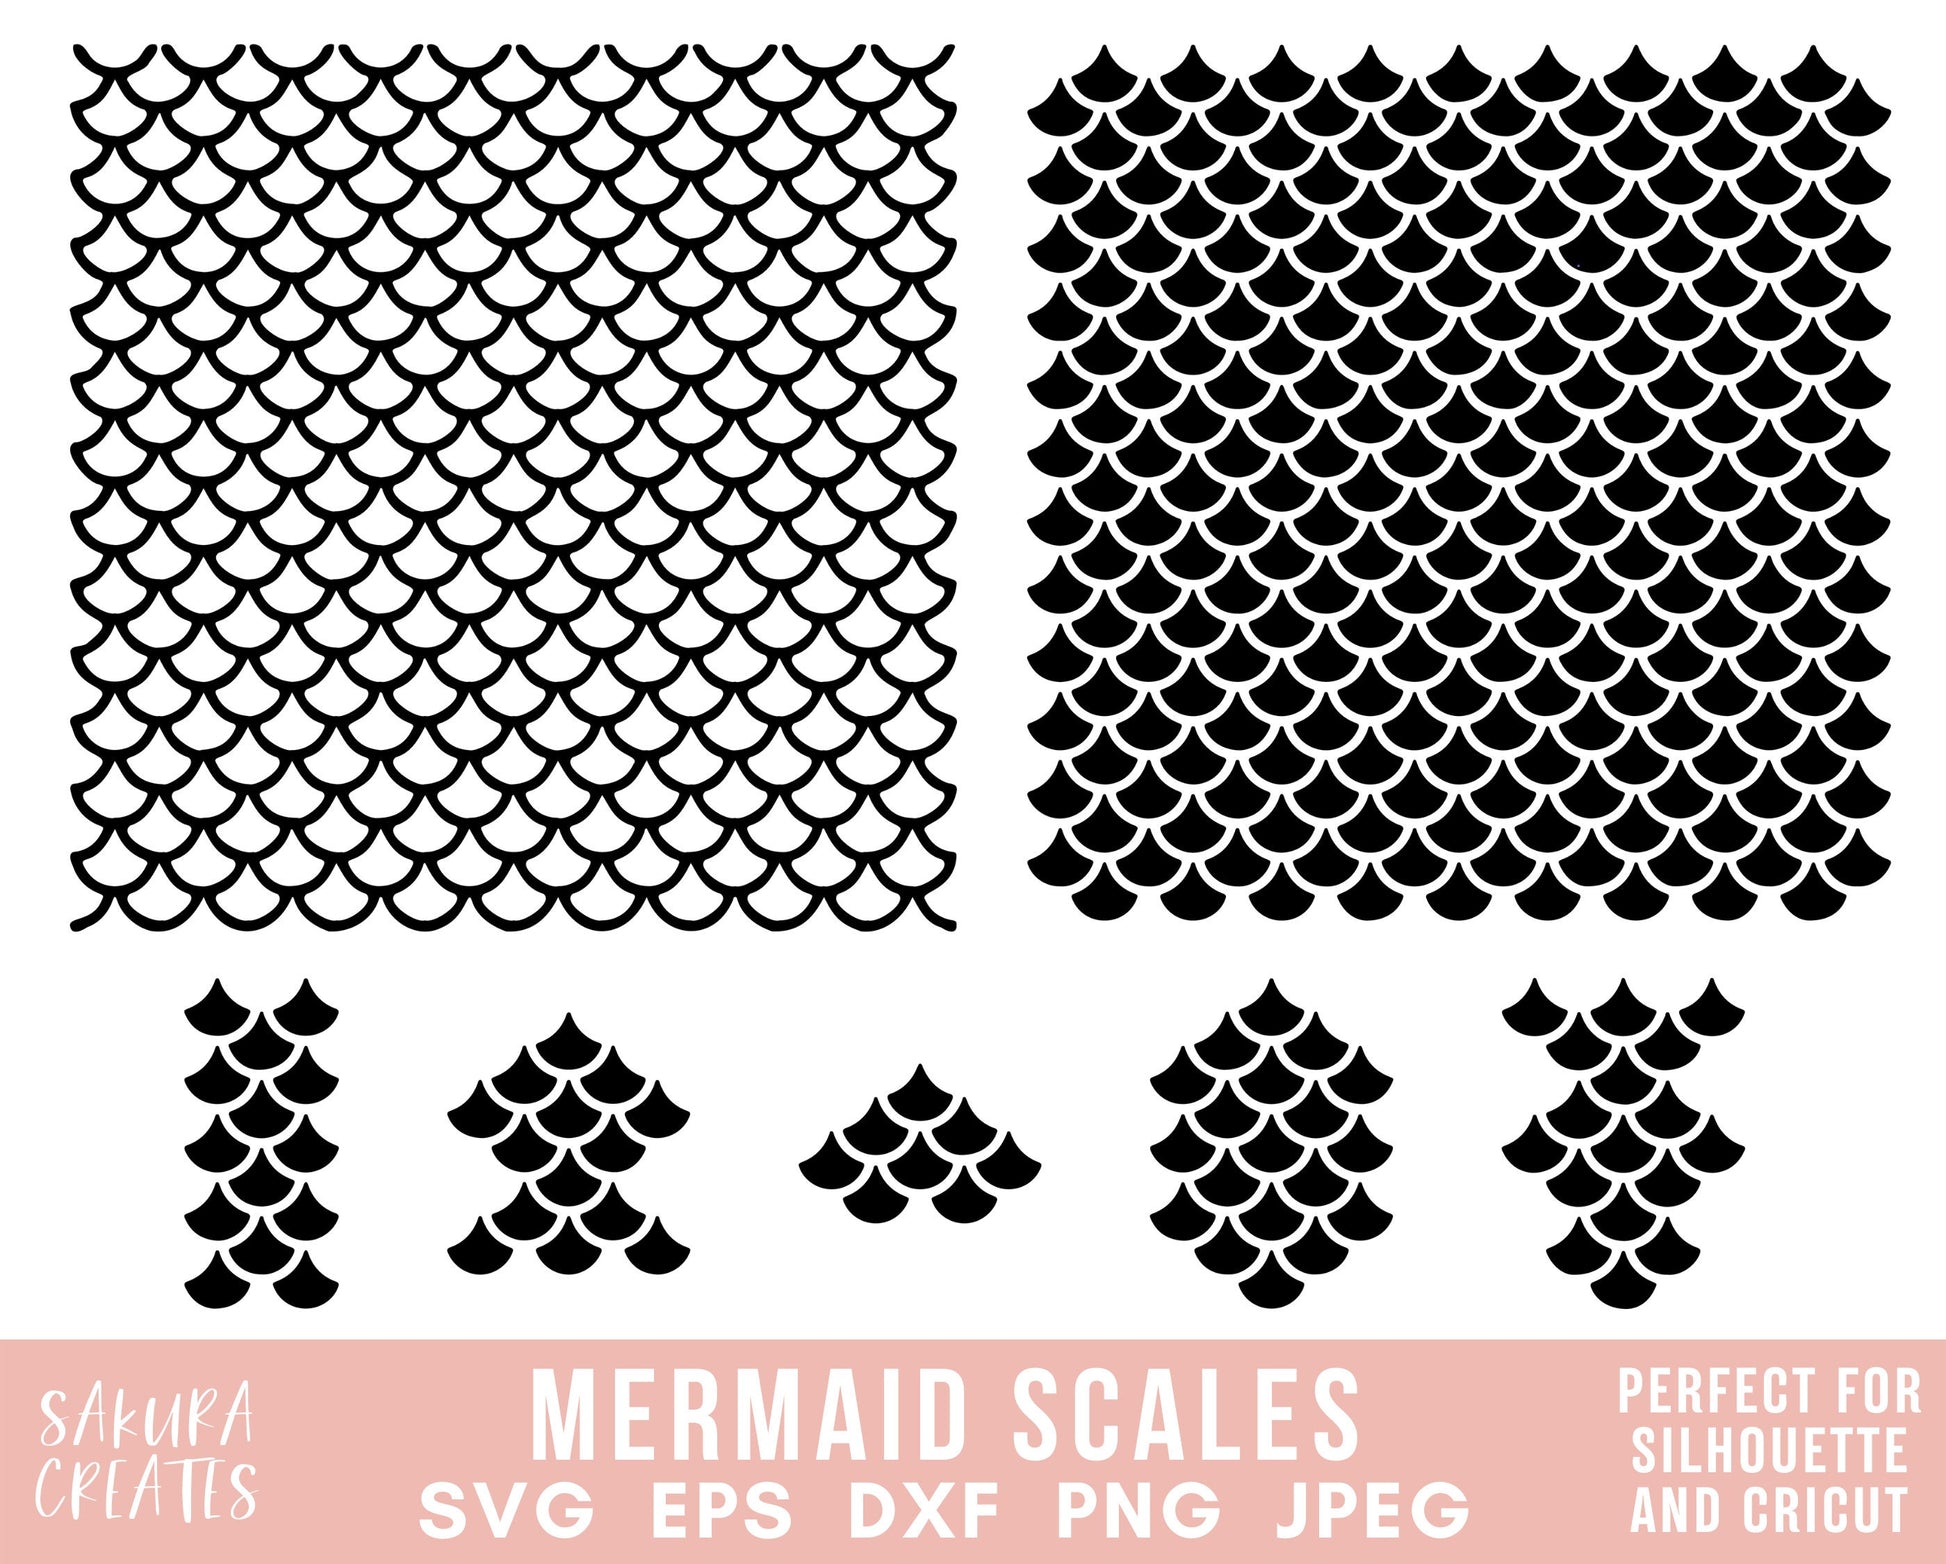 Mermaid Scales Wrap SVG Cup Mermaid Scales Wrap Svg 